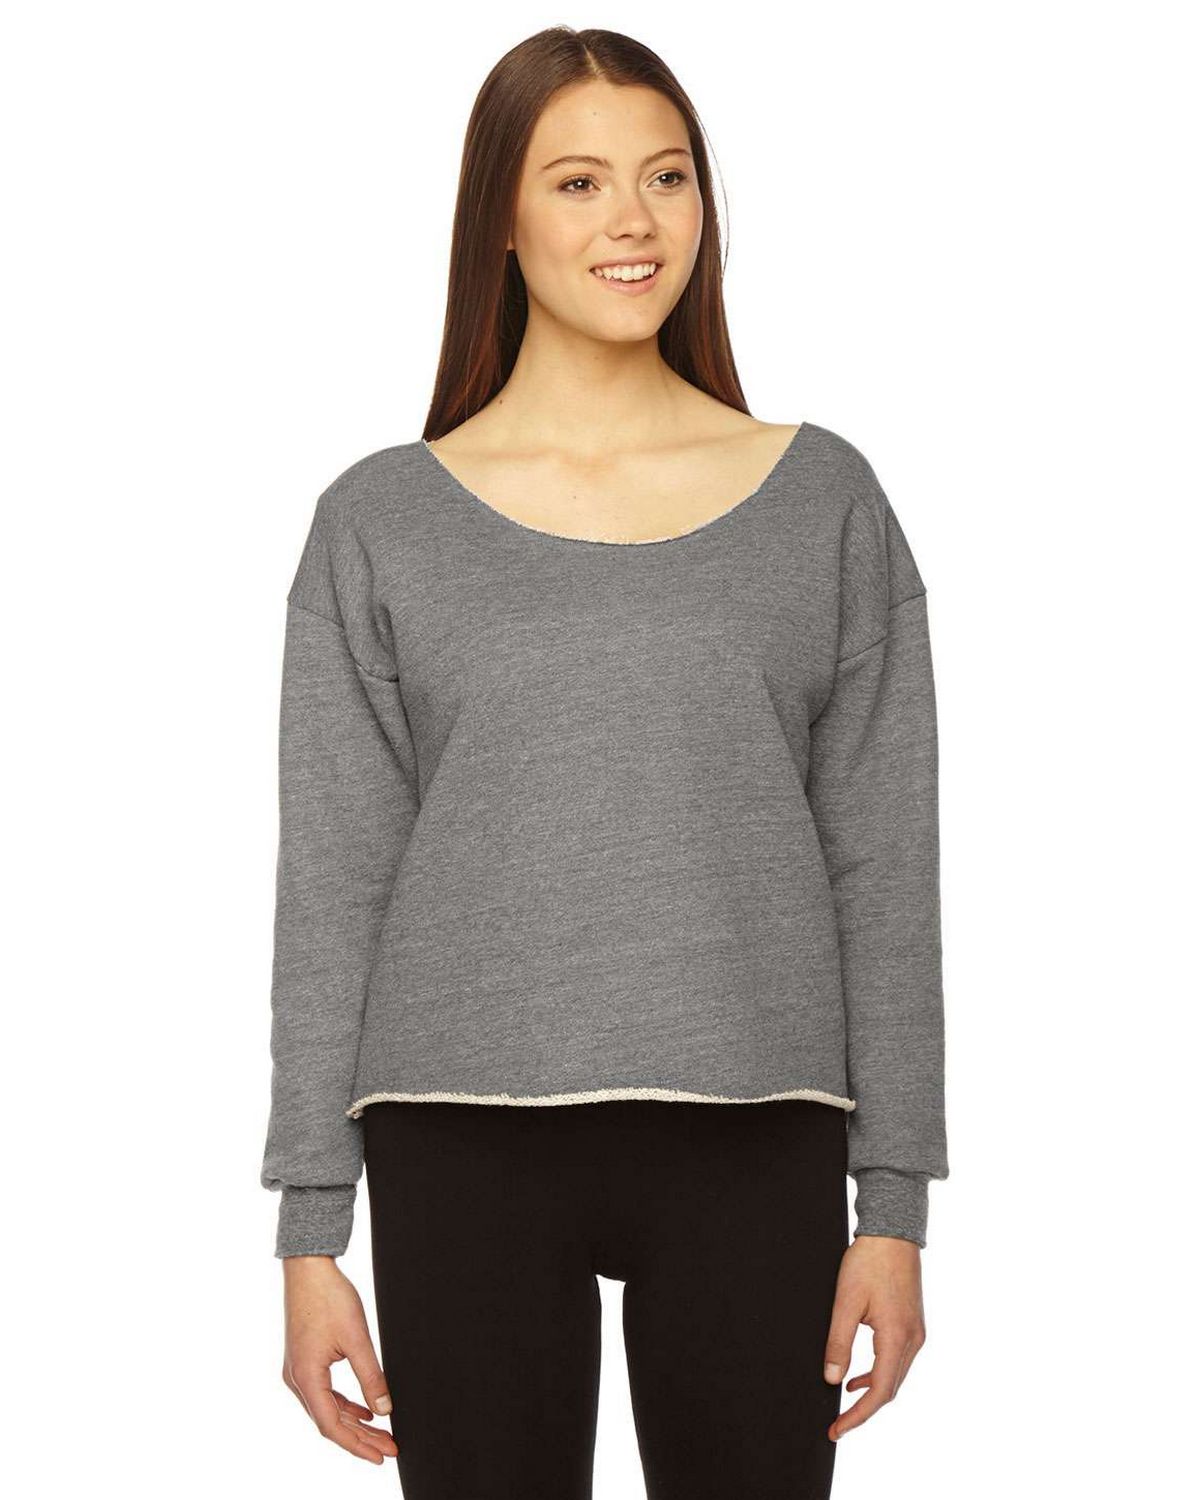 American Apparel HVT316W Ladies Athletic Crop Sweatshirt